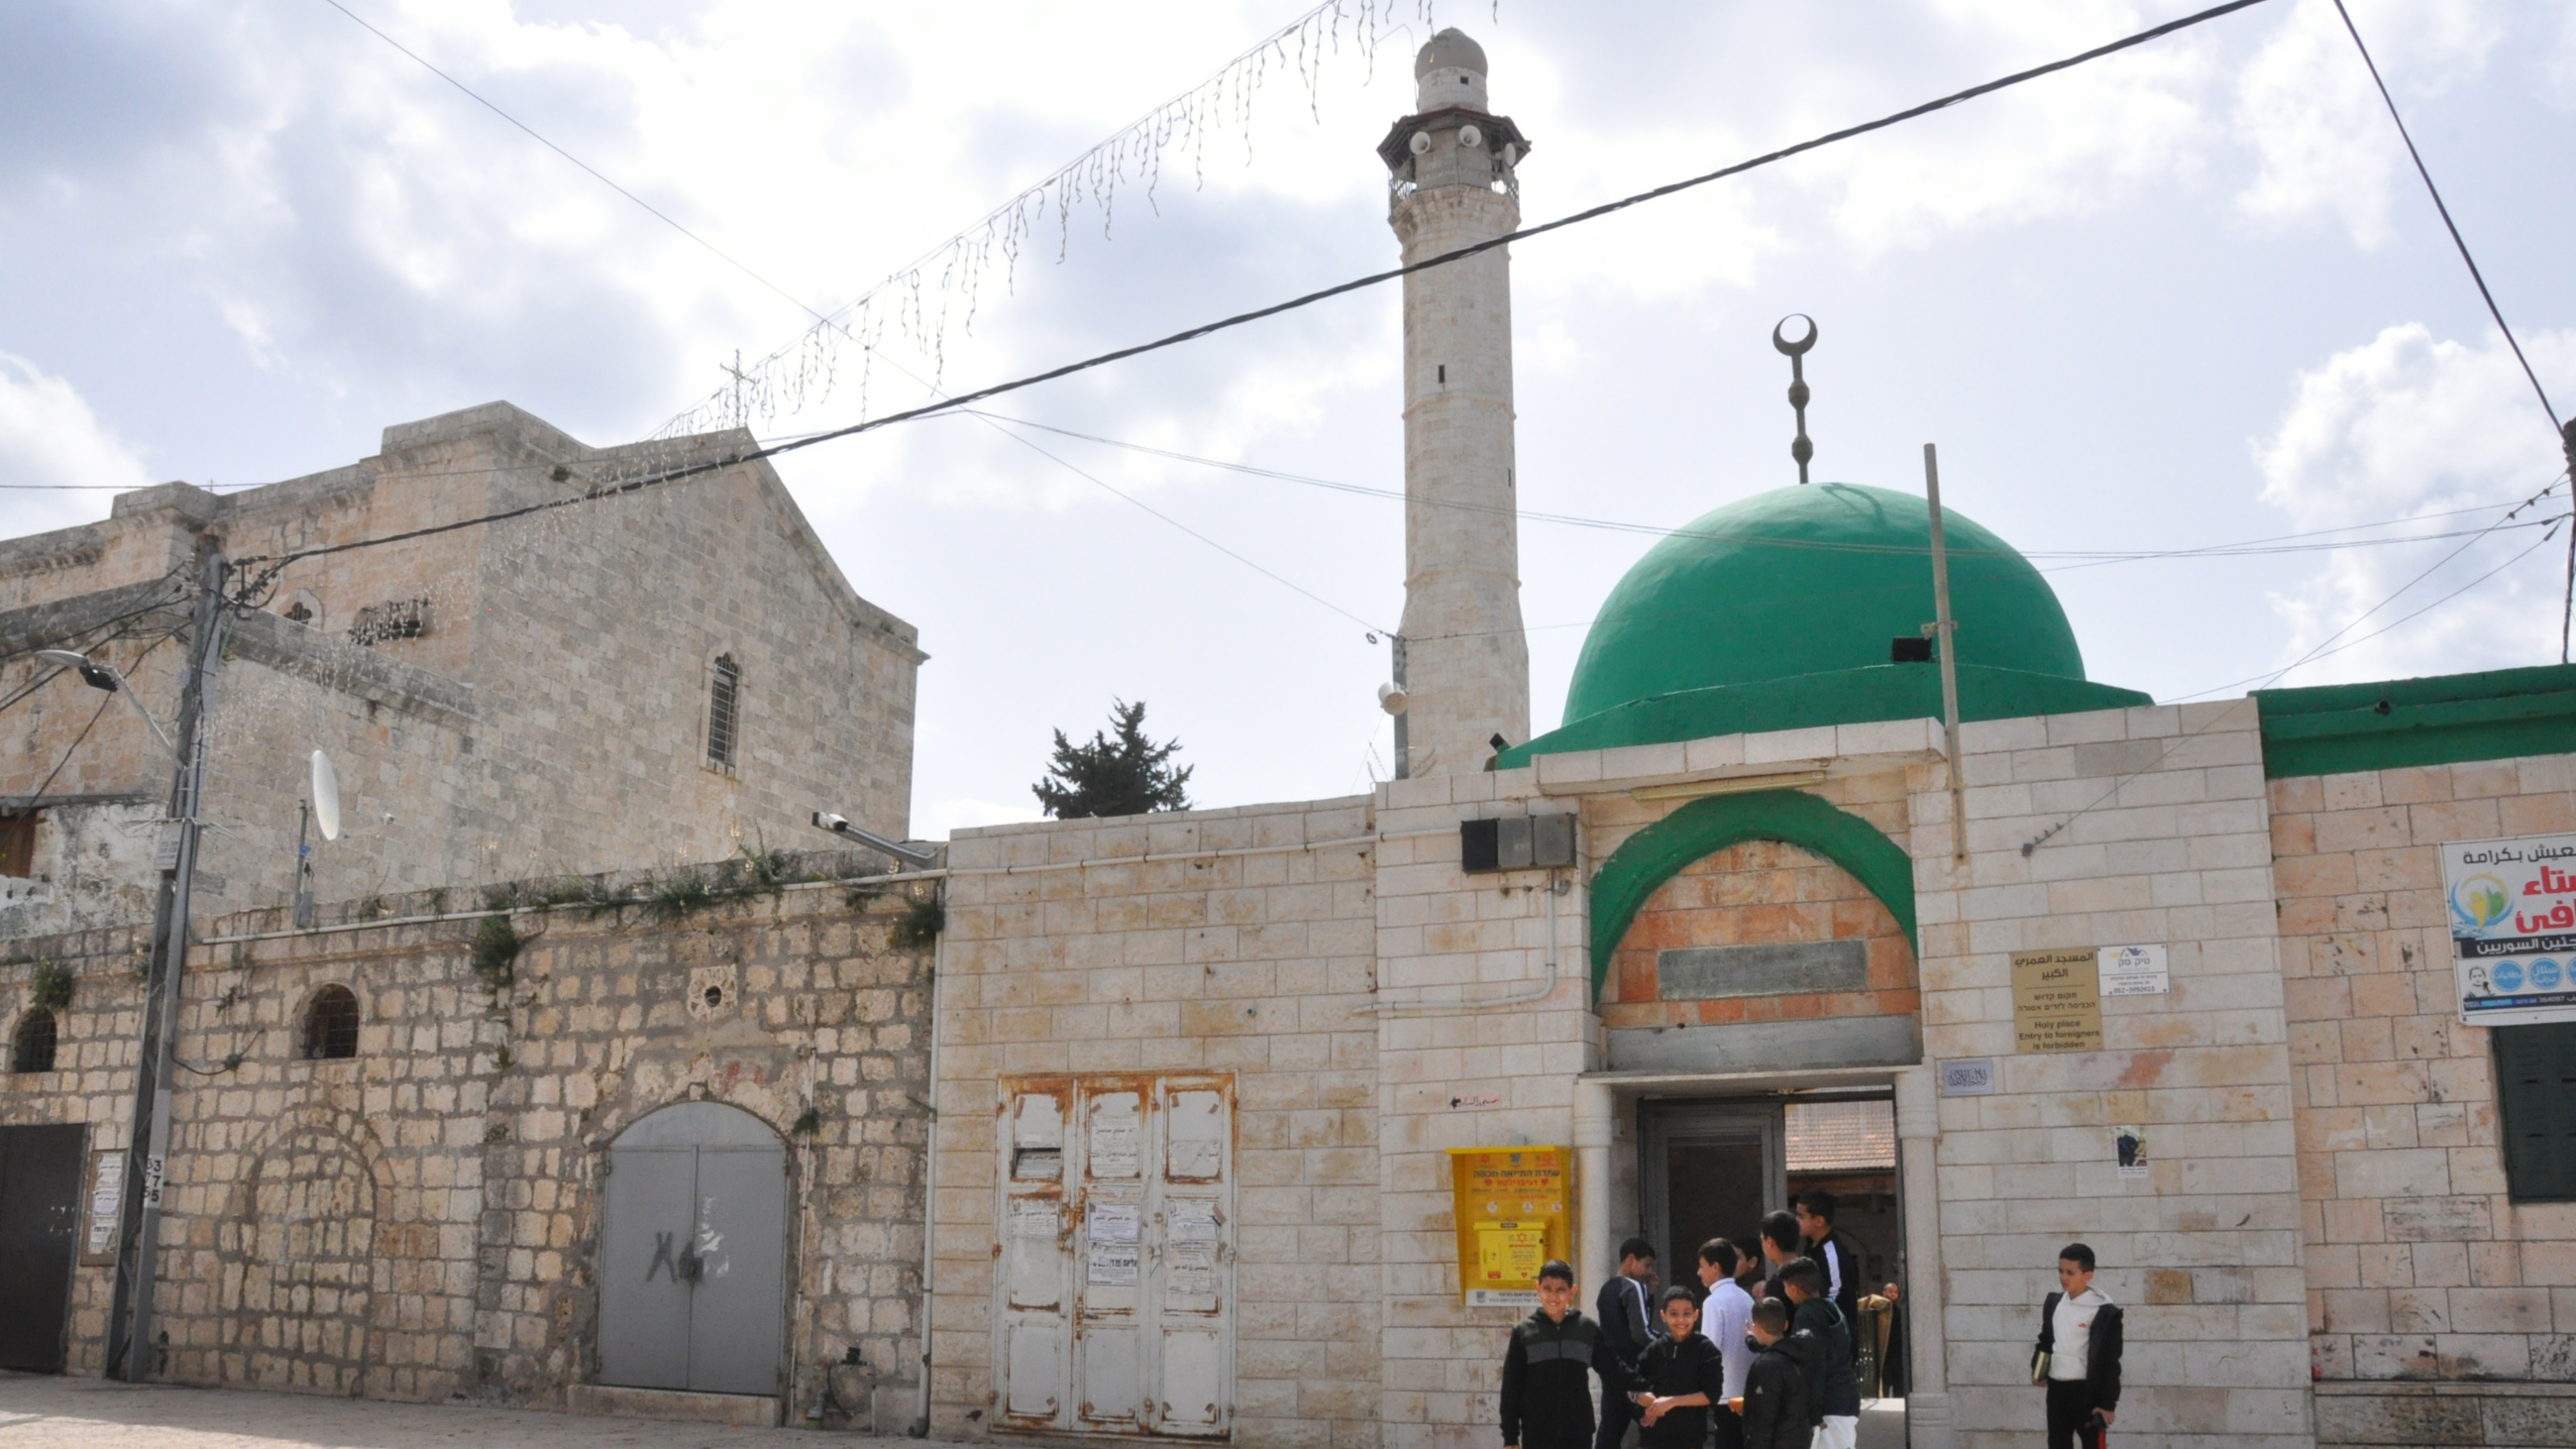 Les cloches de l’église Saint-Georges et le minaret de la mosquée Omari témoignent du patrimoine palestinien indigène de la ville (MEE/Mohammed Wated)